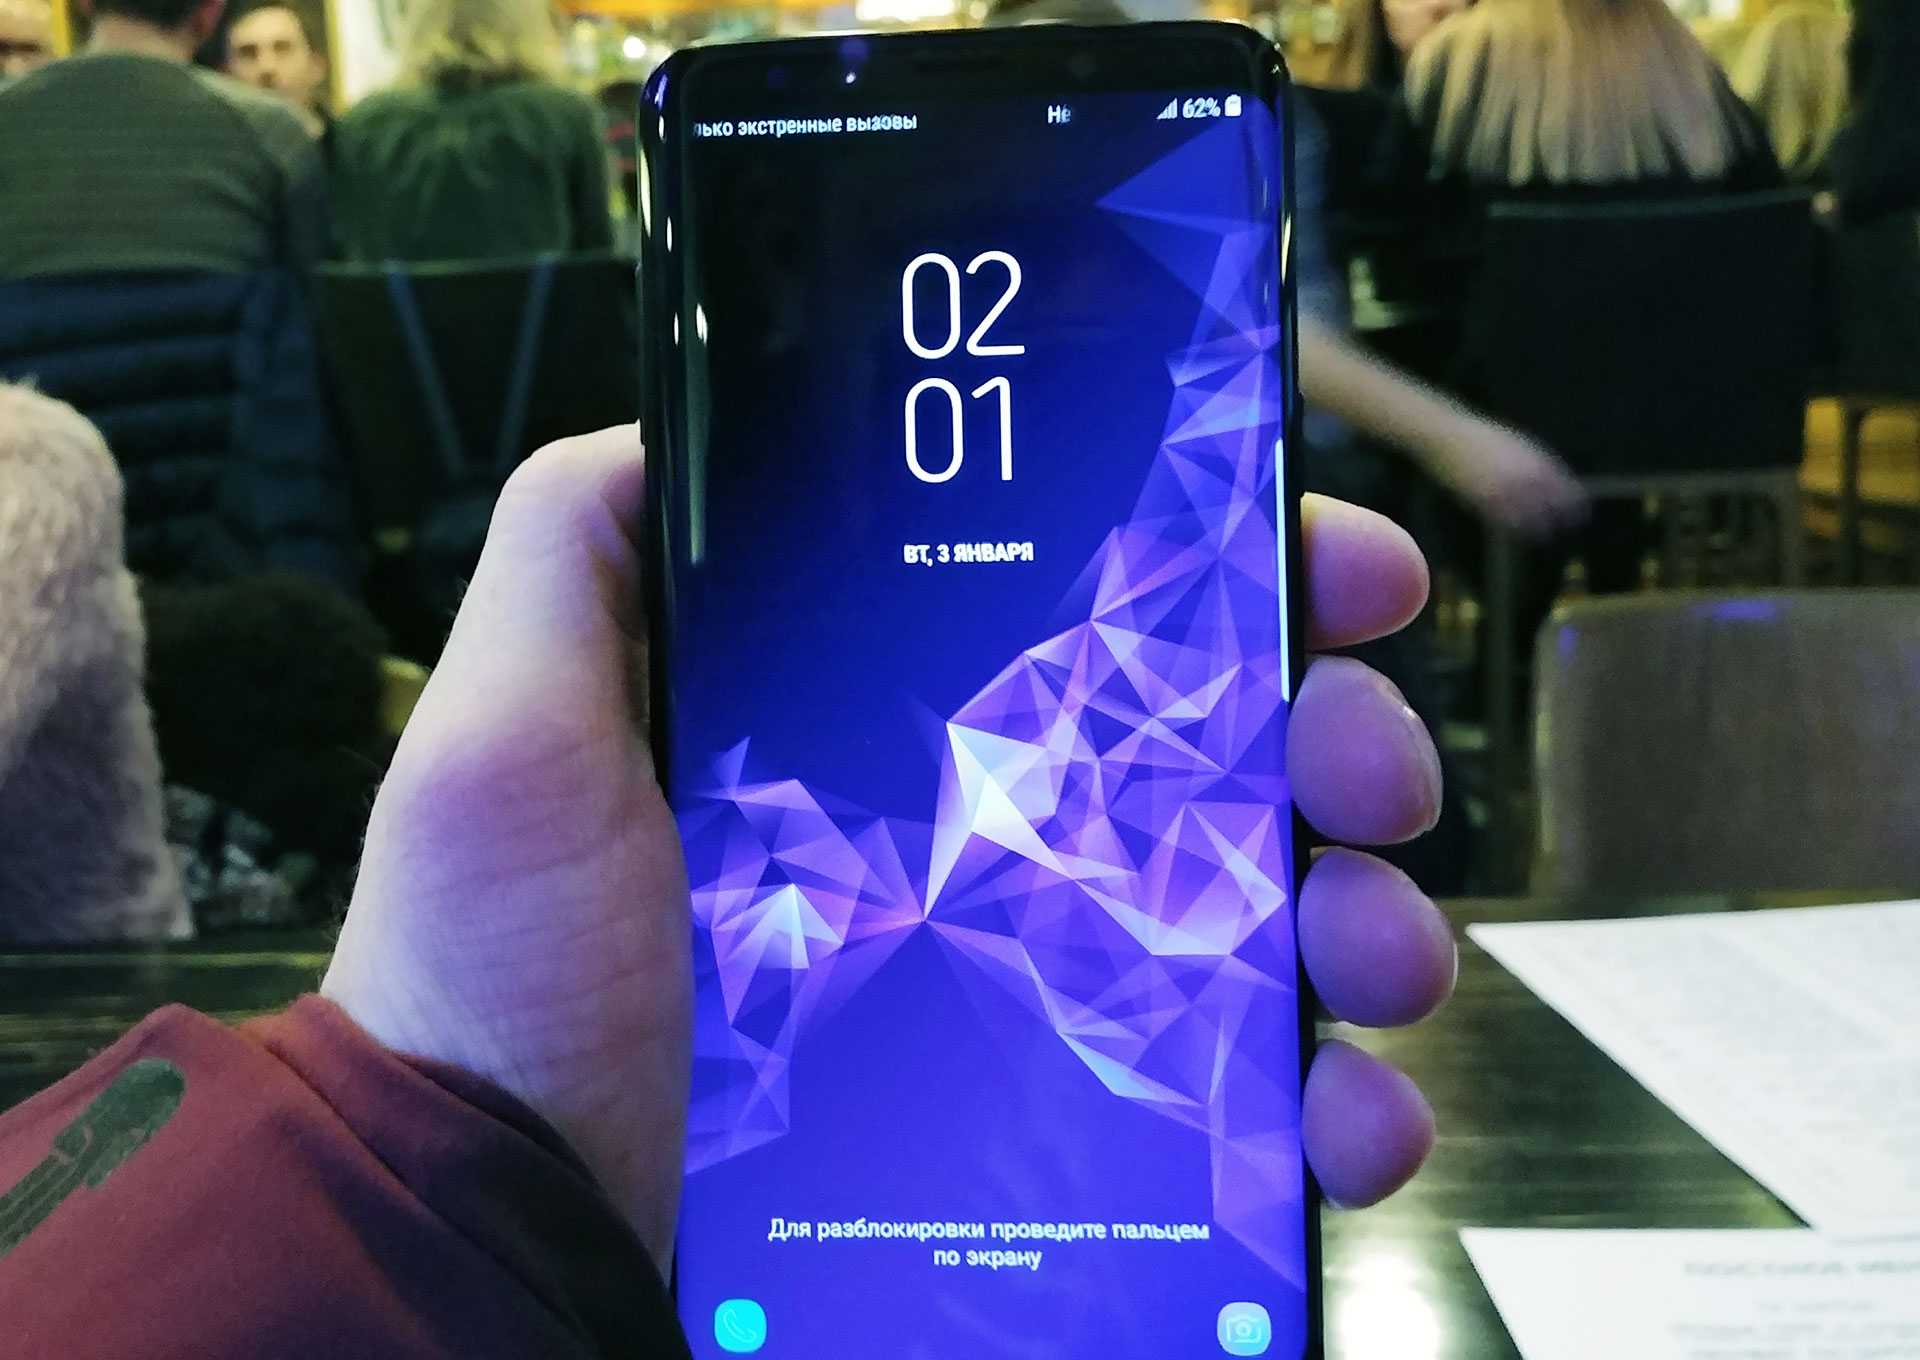 Обзор нового смартфона samsung galaxy s9 (и s9+) ‒ старый дизайн, новая начинка